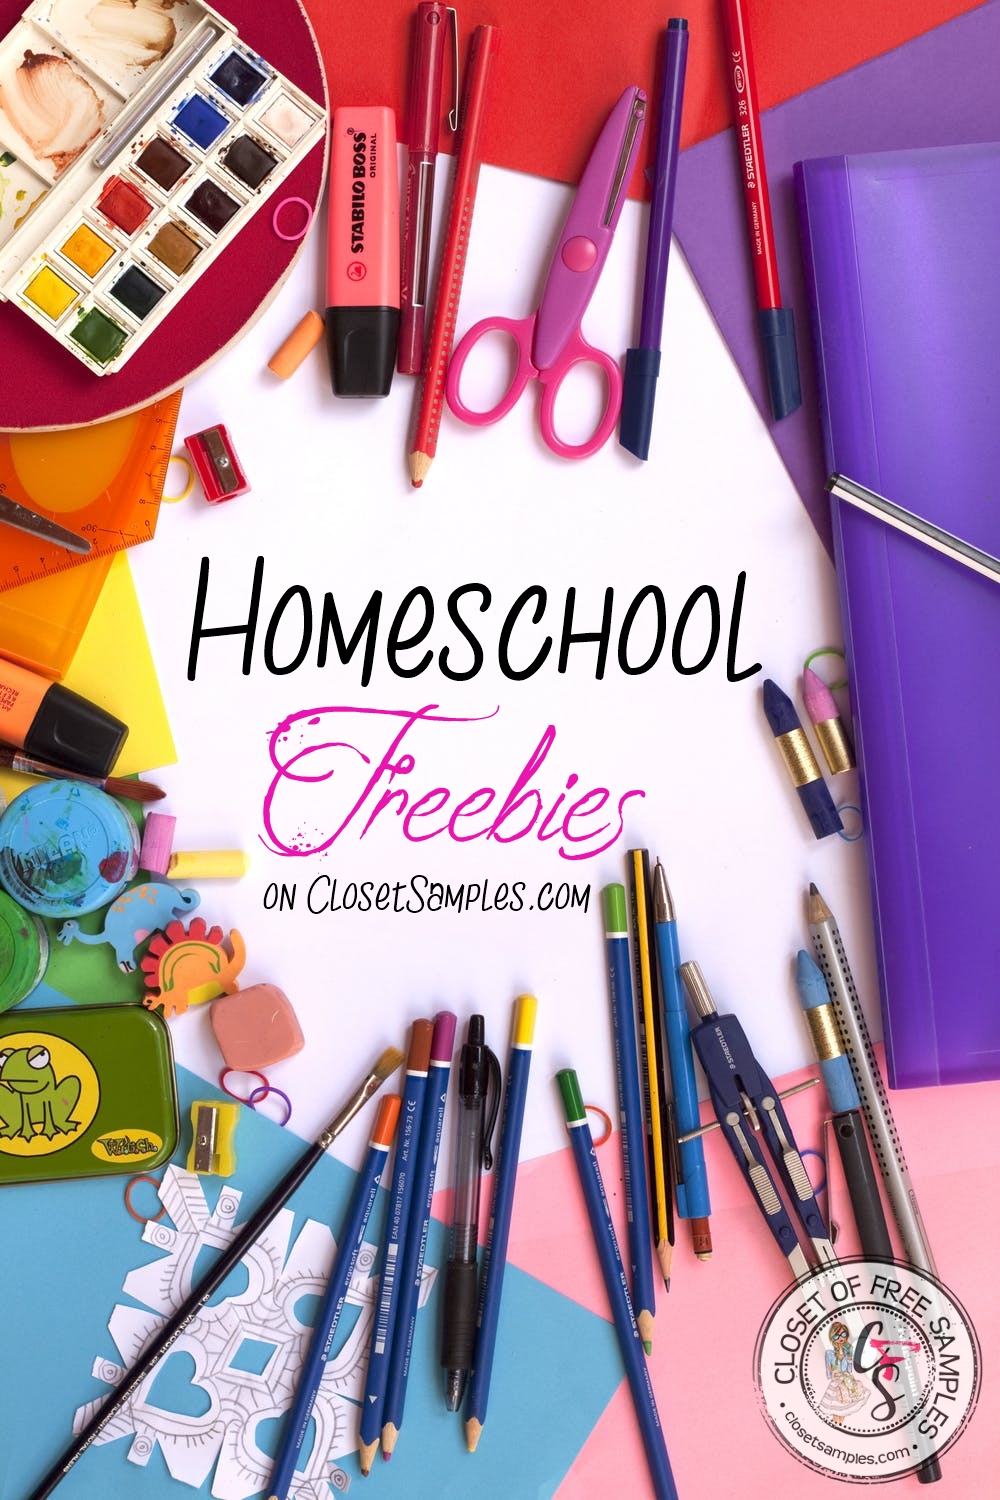 Homeschool-Freebies-Closetsamples-2020.jpeg